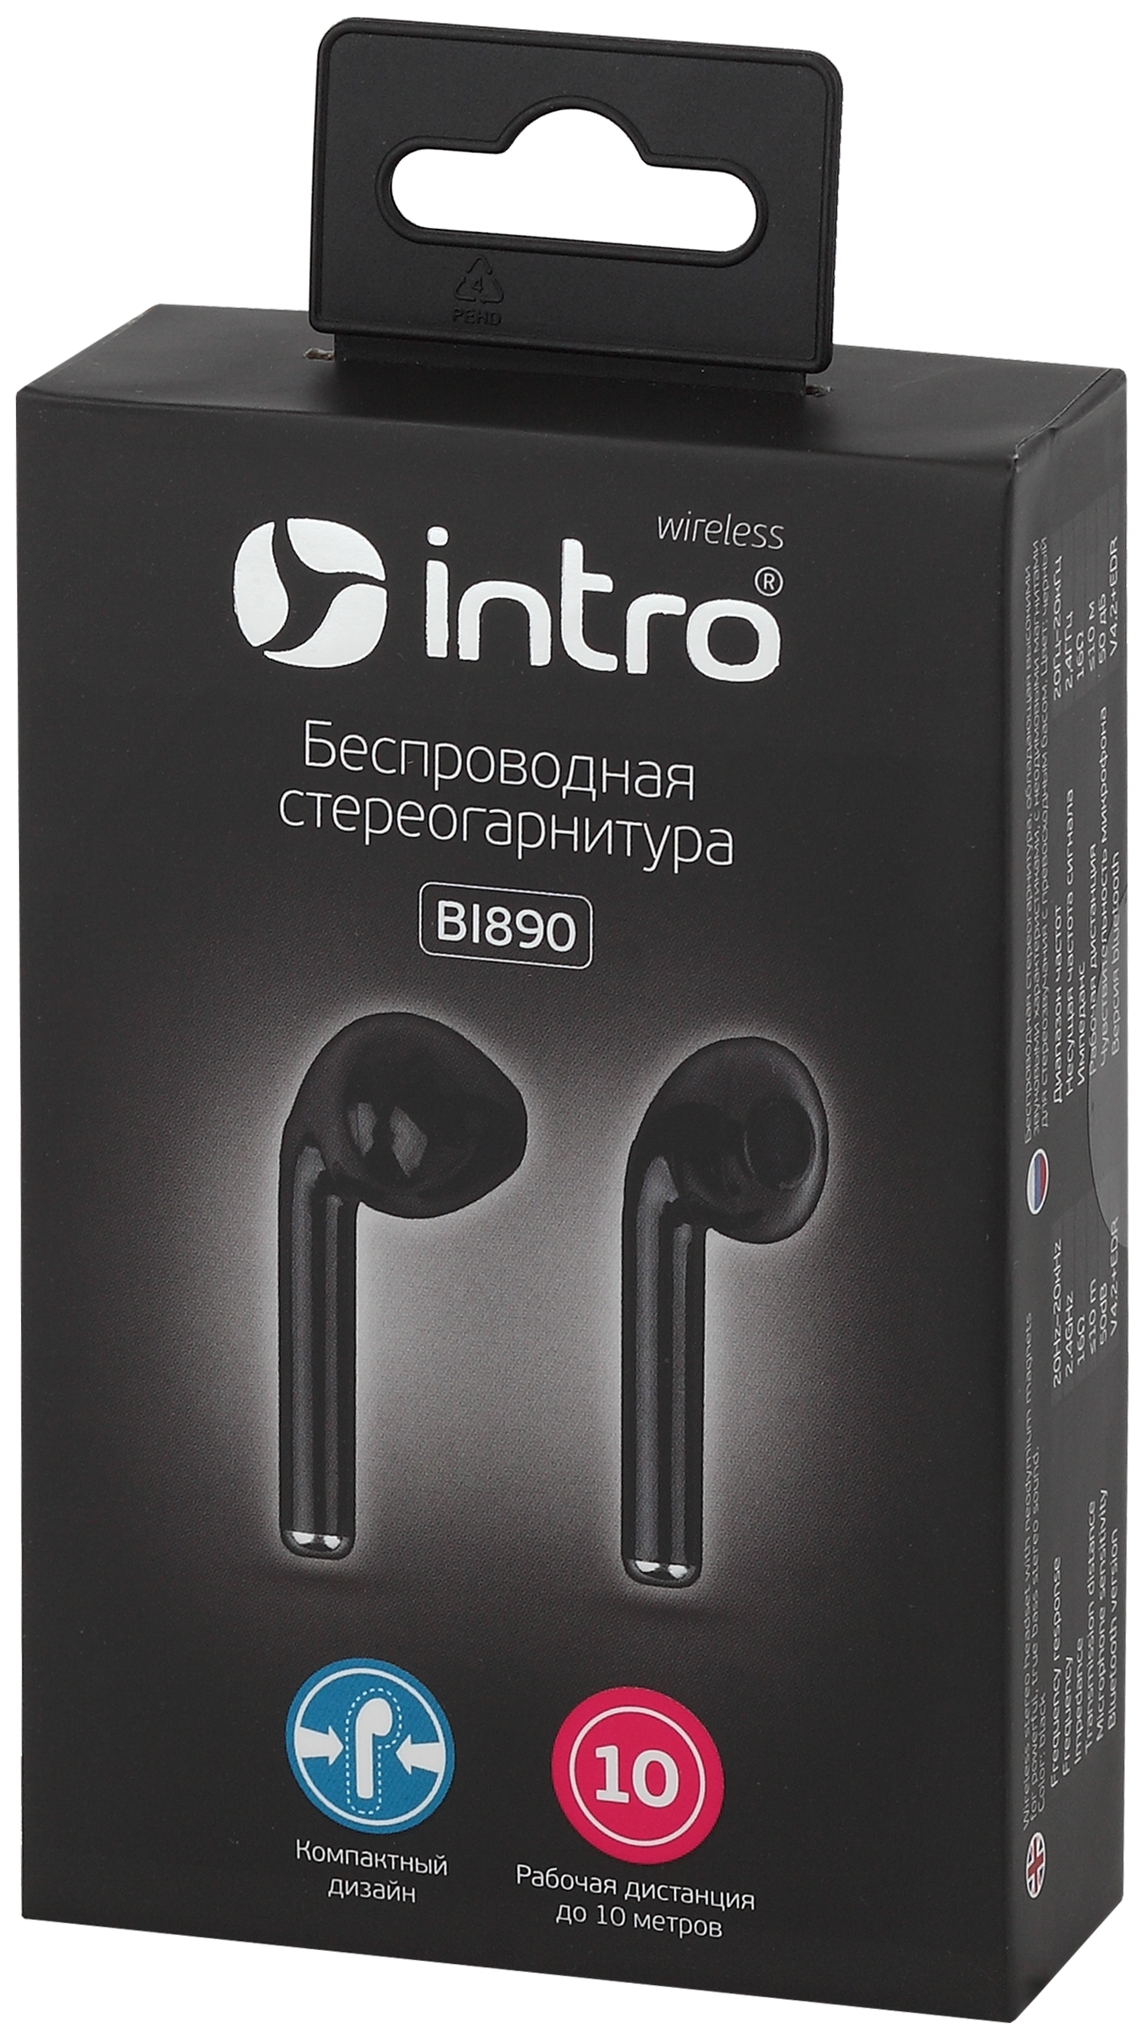 Intro BI890 вкладыши slim, Bluetooth-гарнитура, черные (120/2400)